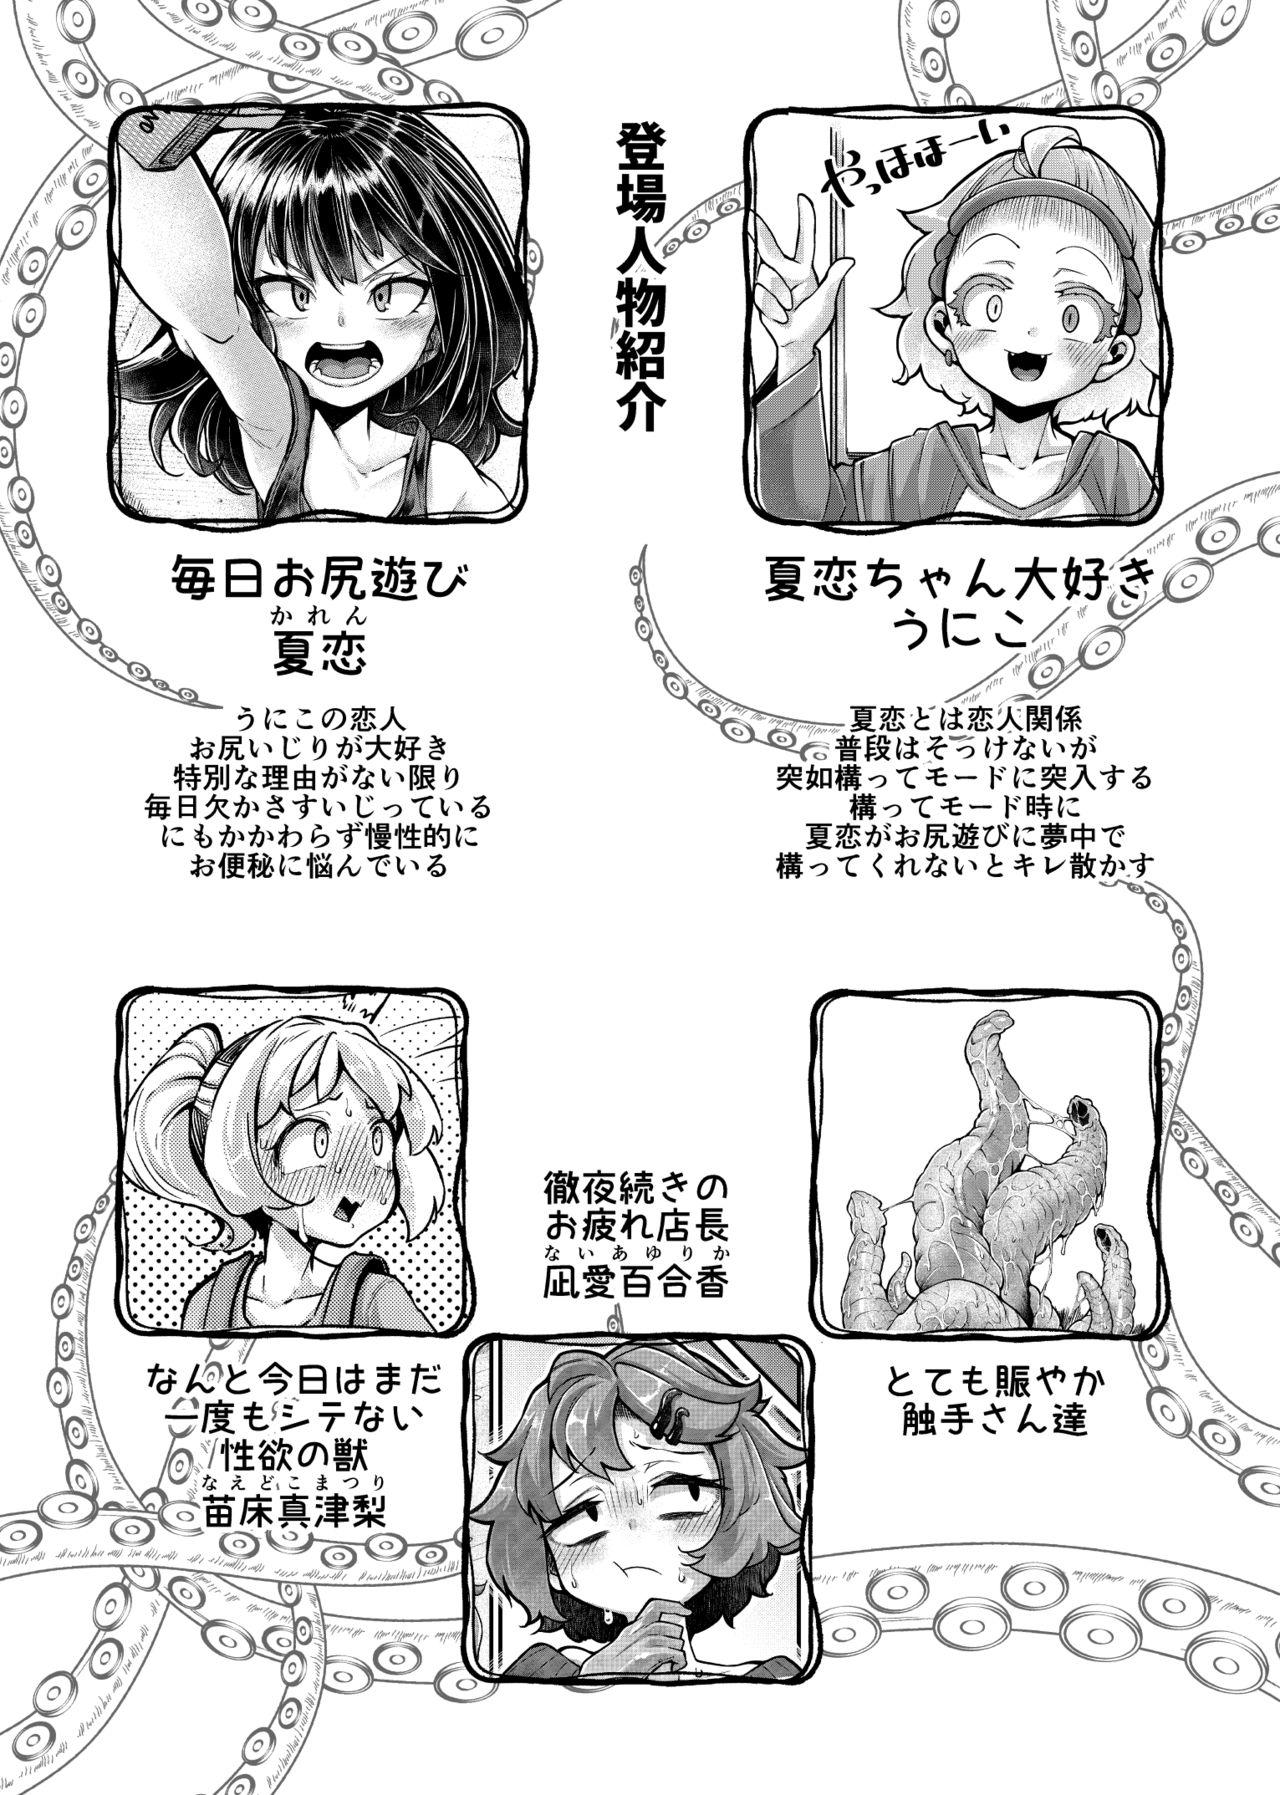 Orgasm Anata no Machi no Shokushuya-san 4.5 - Original Italiano - Page 4